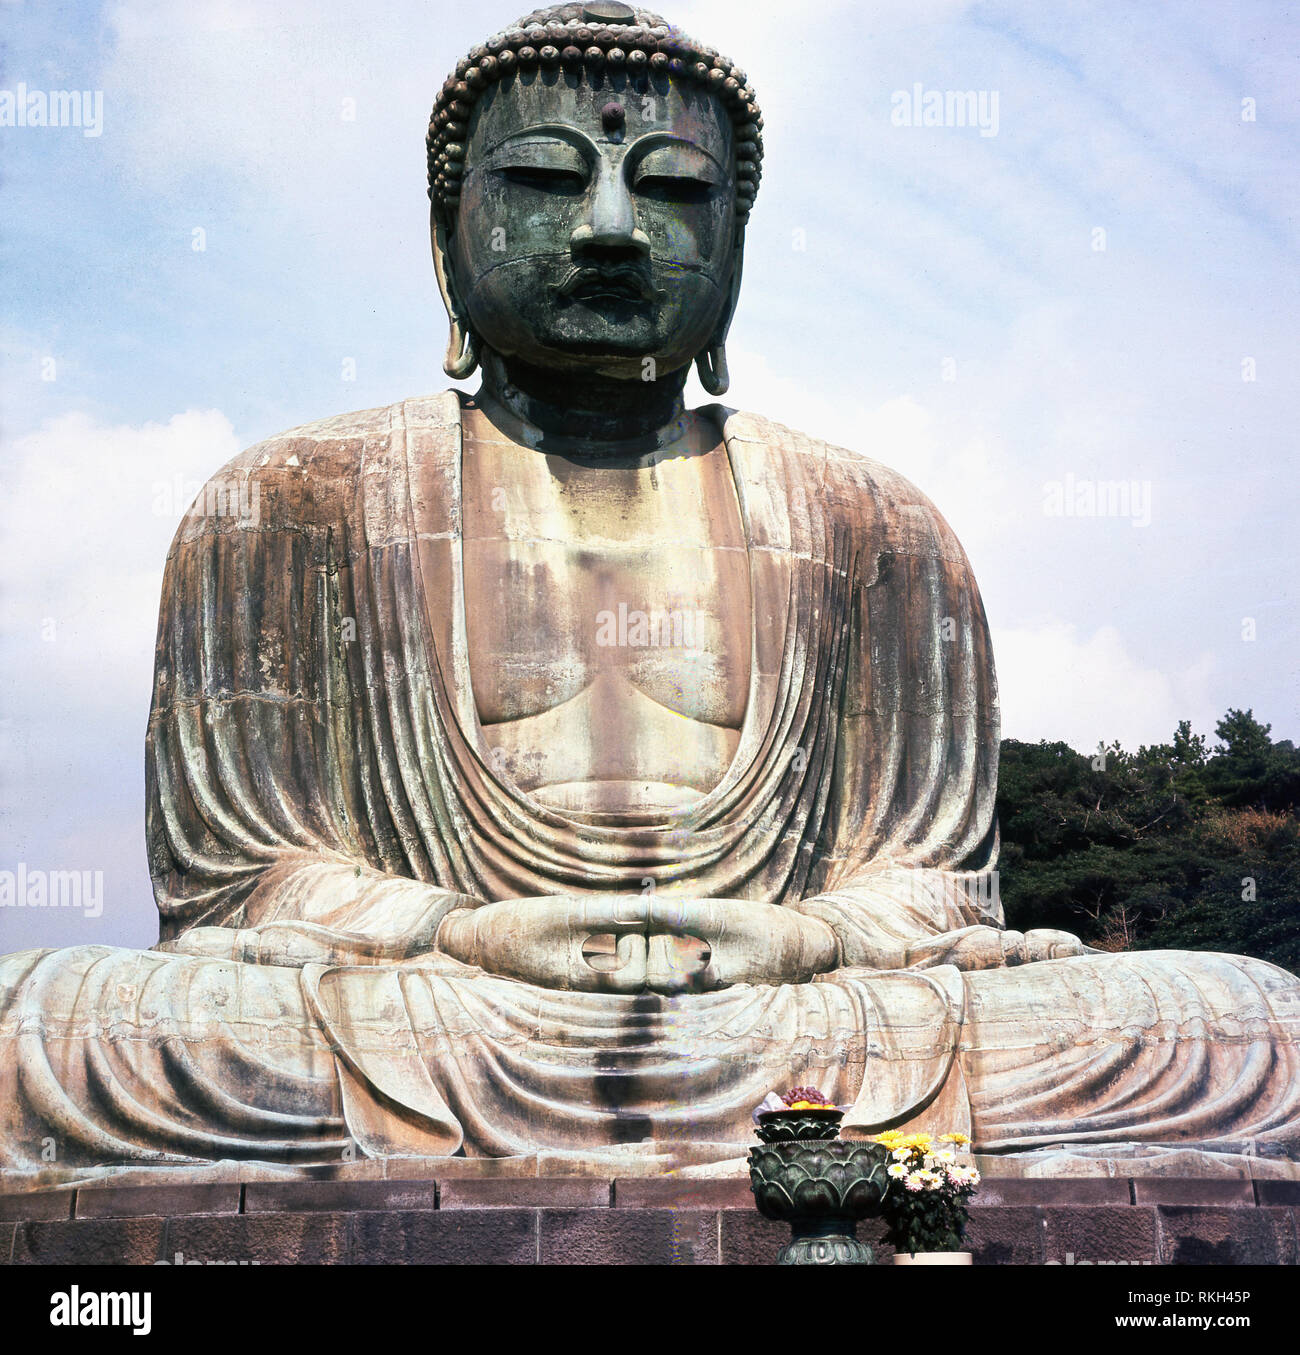 Années 1960, une vue sur le Grand Bouddha (Daibutsu) à Tailzan Shojosenji,Kotokuin dans la ville de Kamakura, au Japon. Cette grande - plus de 13 mètres de haut - une statue en bronze d'Amida Buddha est une des plus célèbres icônes culturelles du Japon et remonte à 1252. Banque D'Images